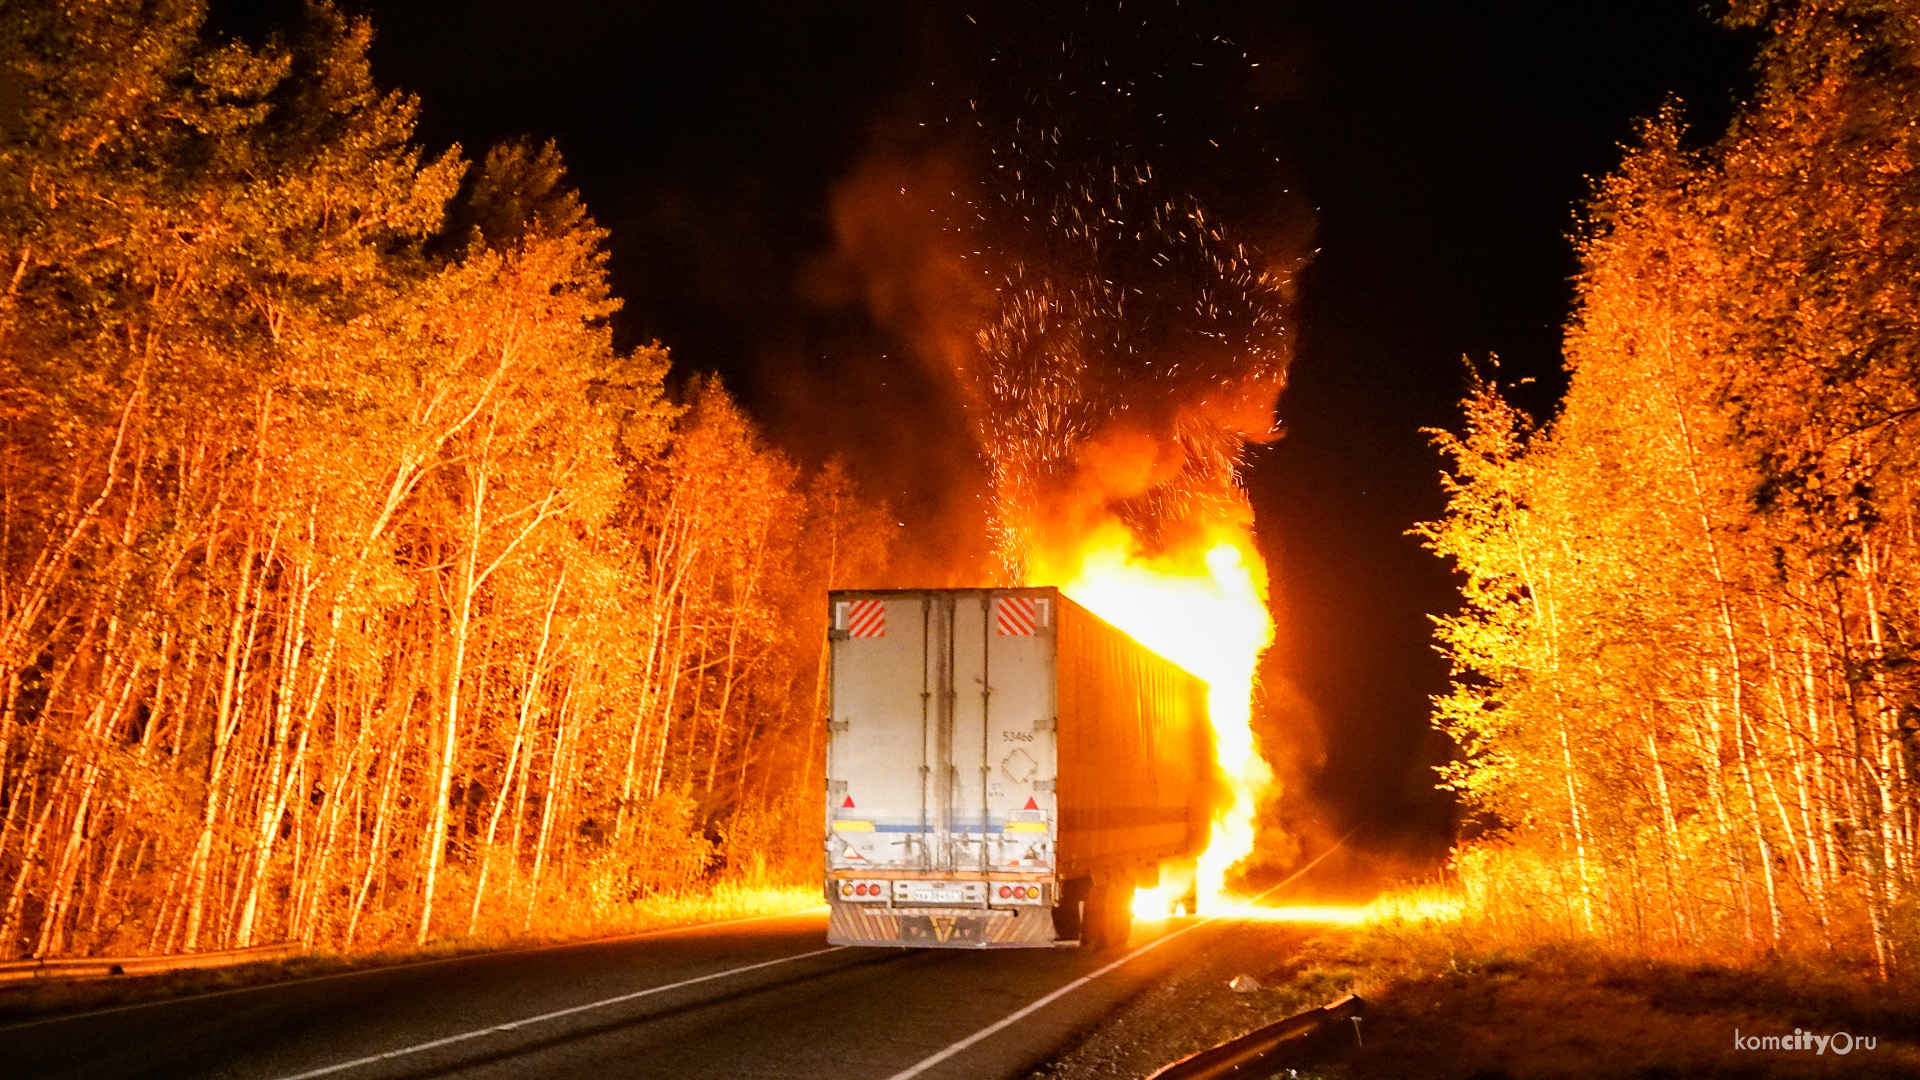 На трассе Комсомольск-на-Амуре — Хабаровск эпично сгорела фура с фейерверками (Видео)